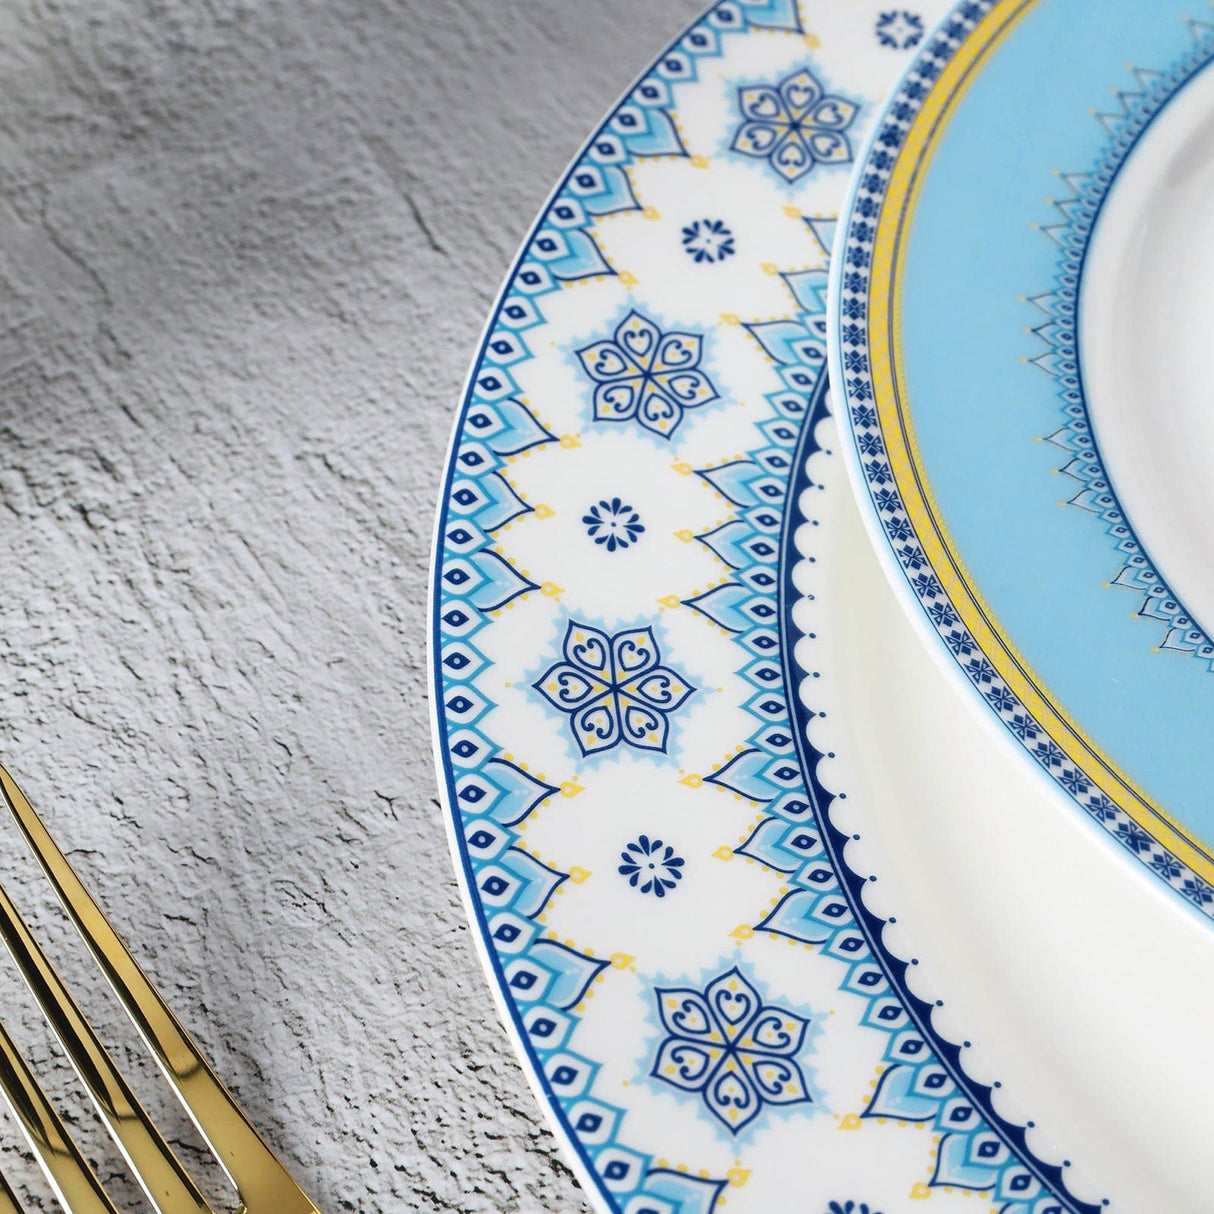 Blue Porcelain Dinner Set